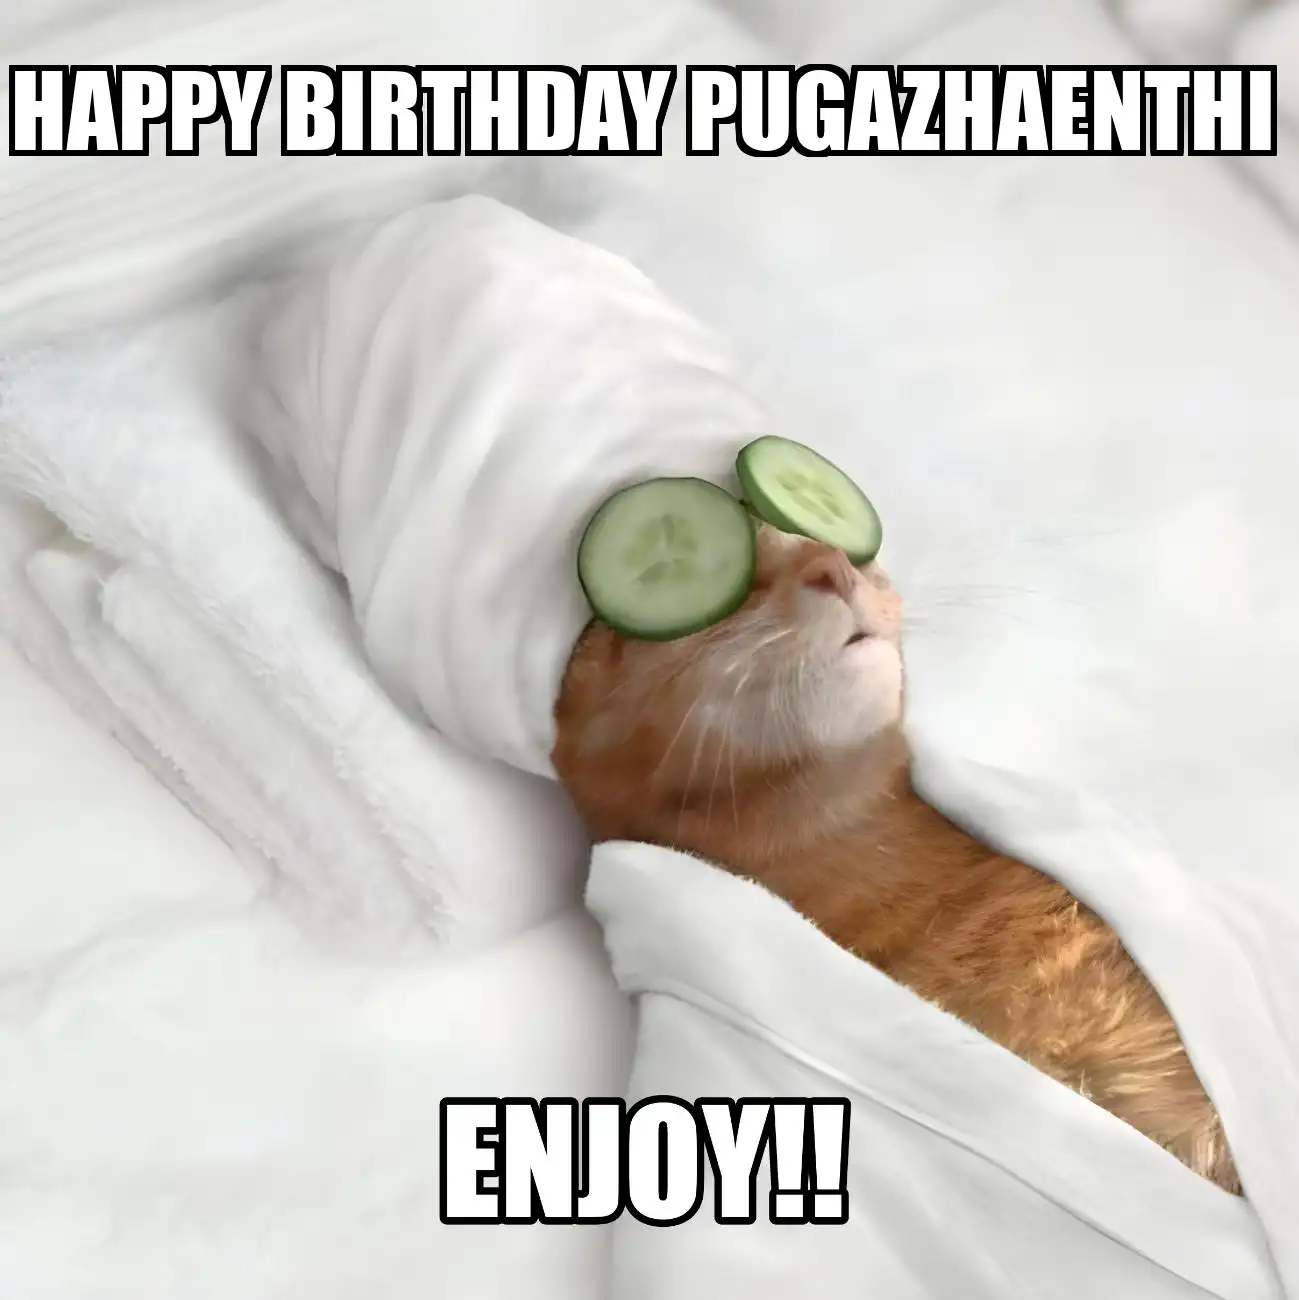 Happy Birthday Pugazhaenthi Enjoy Cat Meme